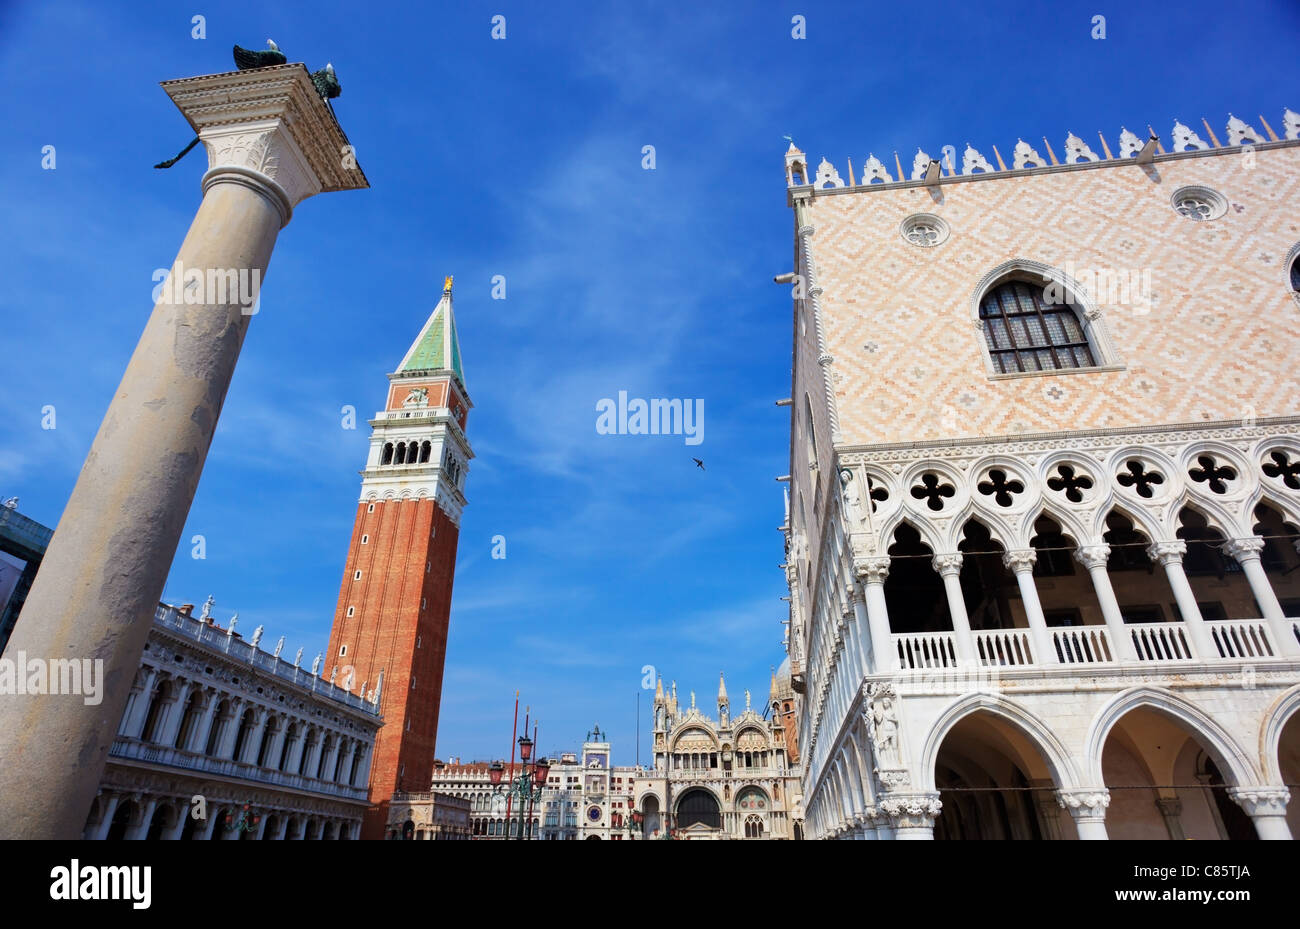 Weitwinkel Schuss der Palast des Dogen und Campanile auf dem Markusplatz in Venedig, Italien Stockfoto